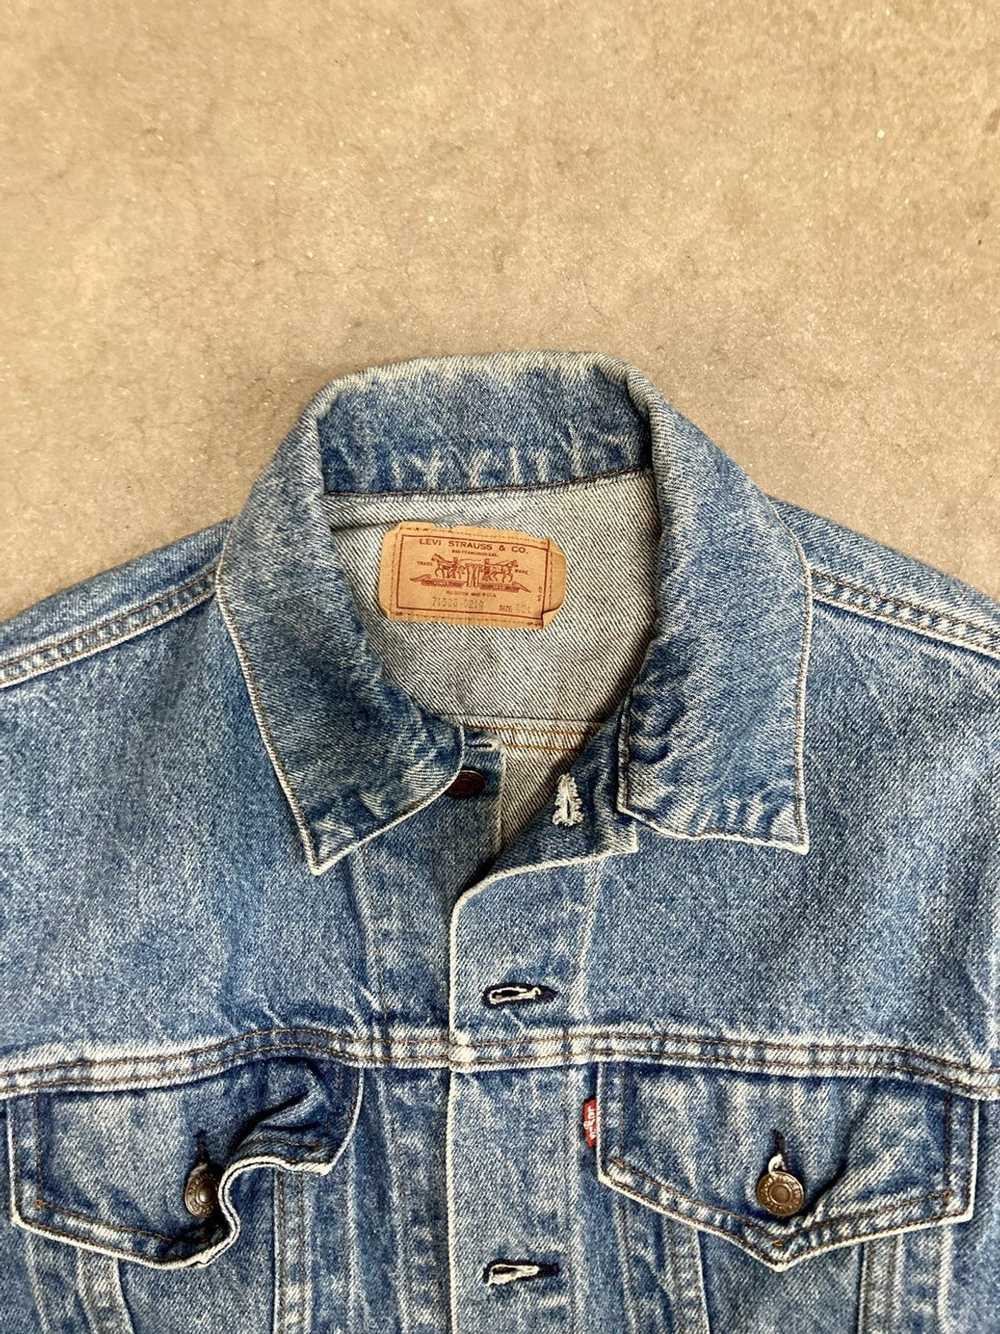 Levi's × Vintage 1980s - Levi's Jeans Jacket - image 2